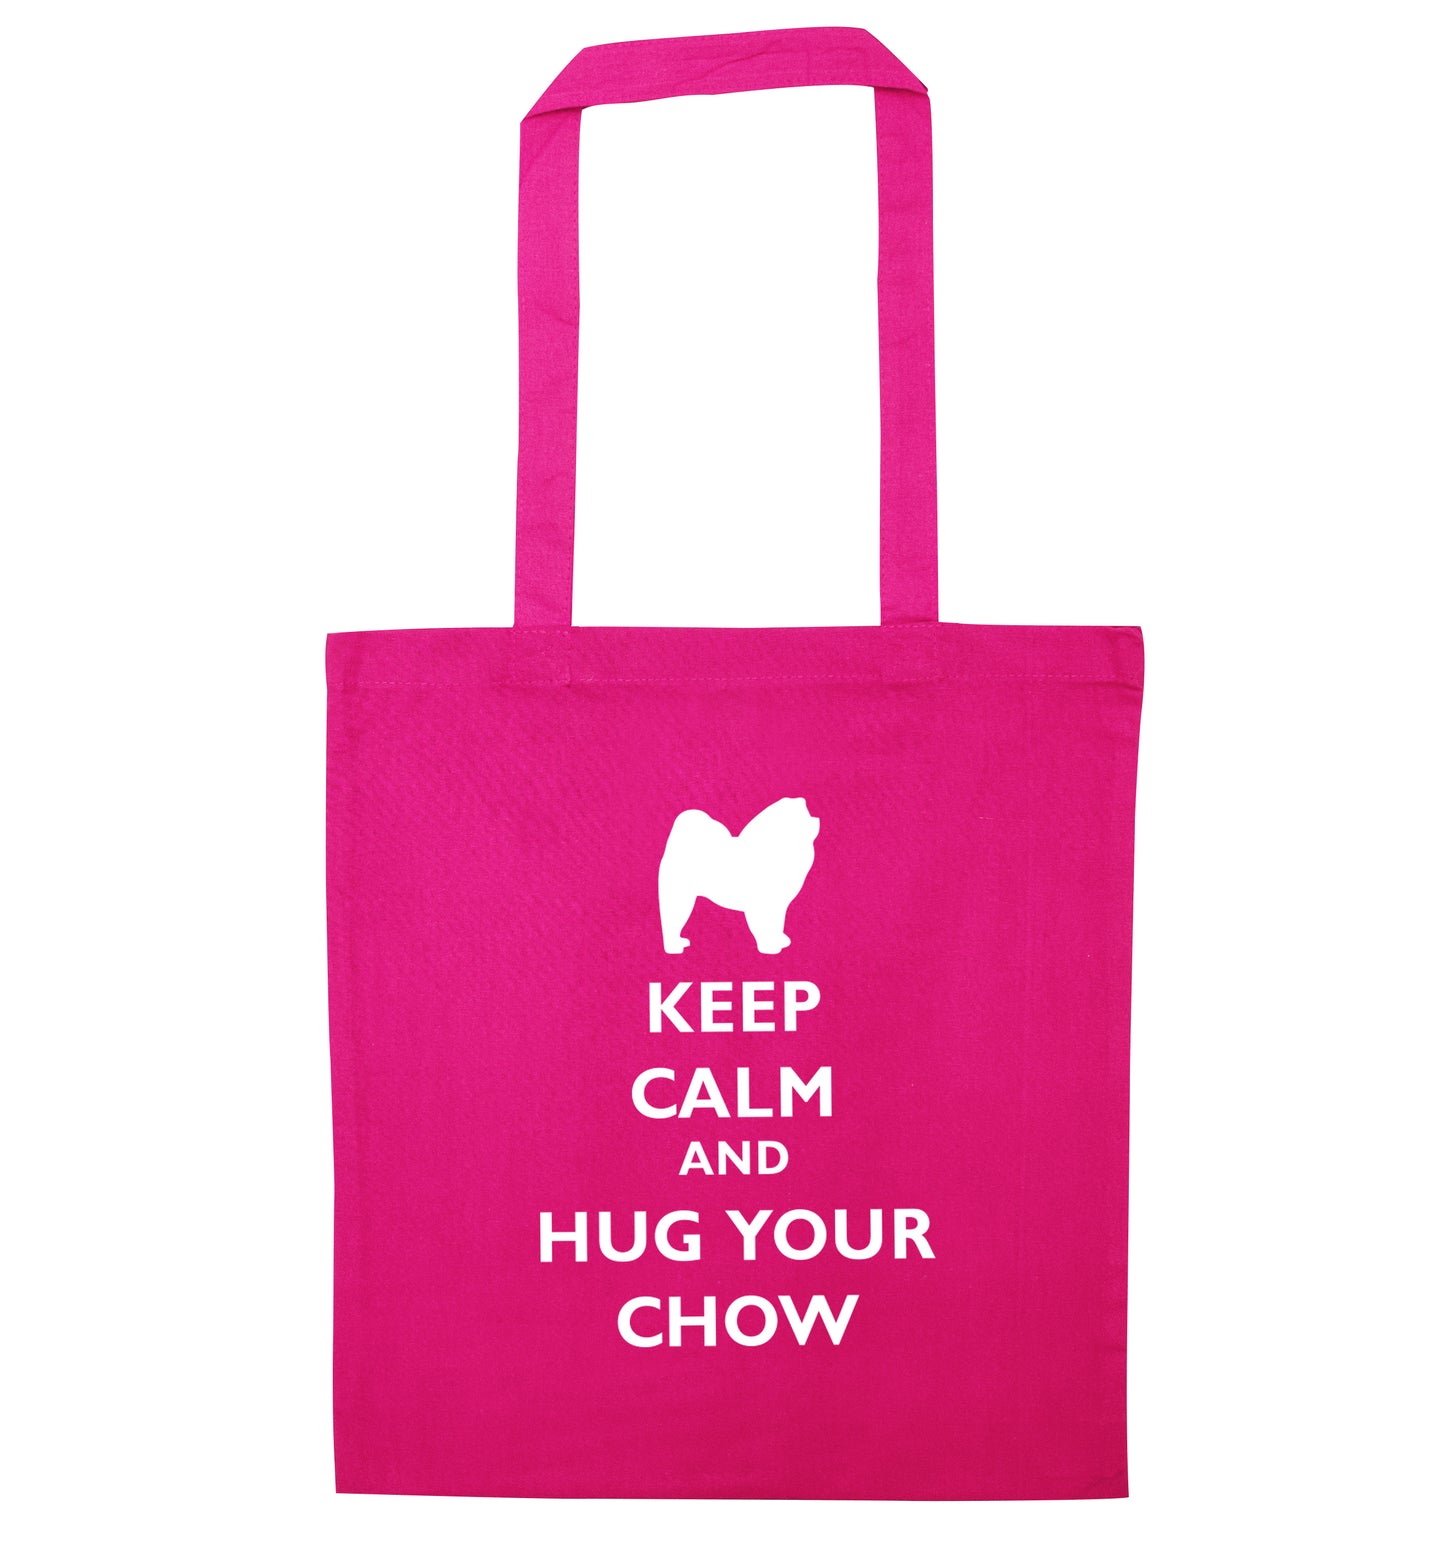 Keep calm and hug your chow pink tote bag